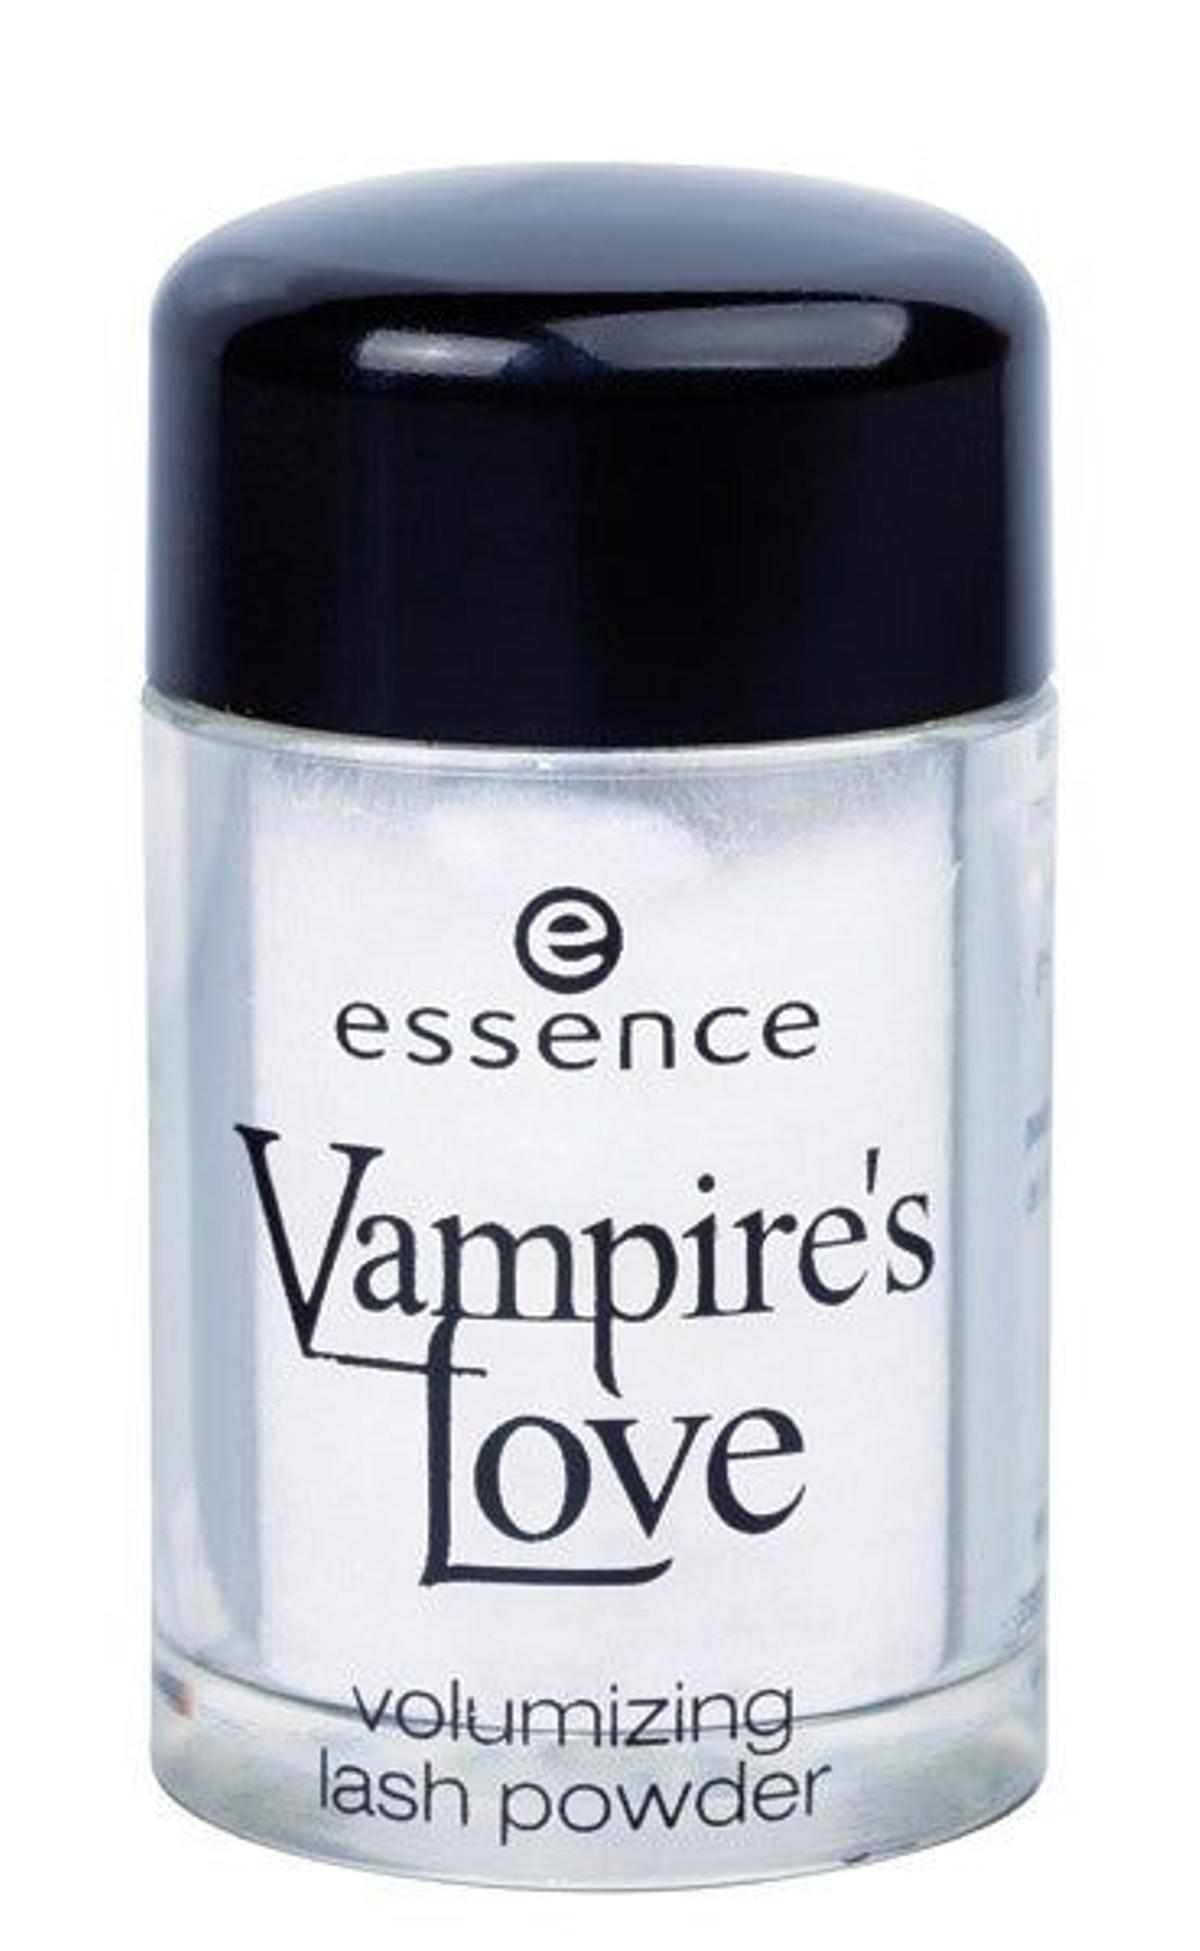 2,99 € Polvos Volumen de Pestañas Vampire’s Love, de Essence